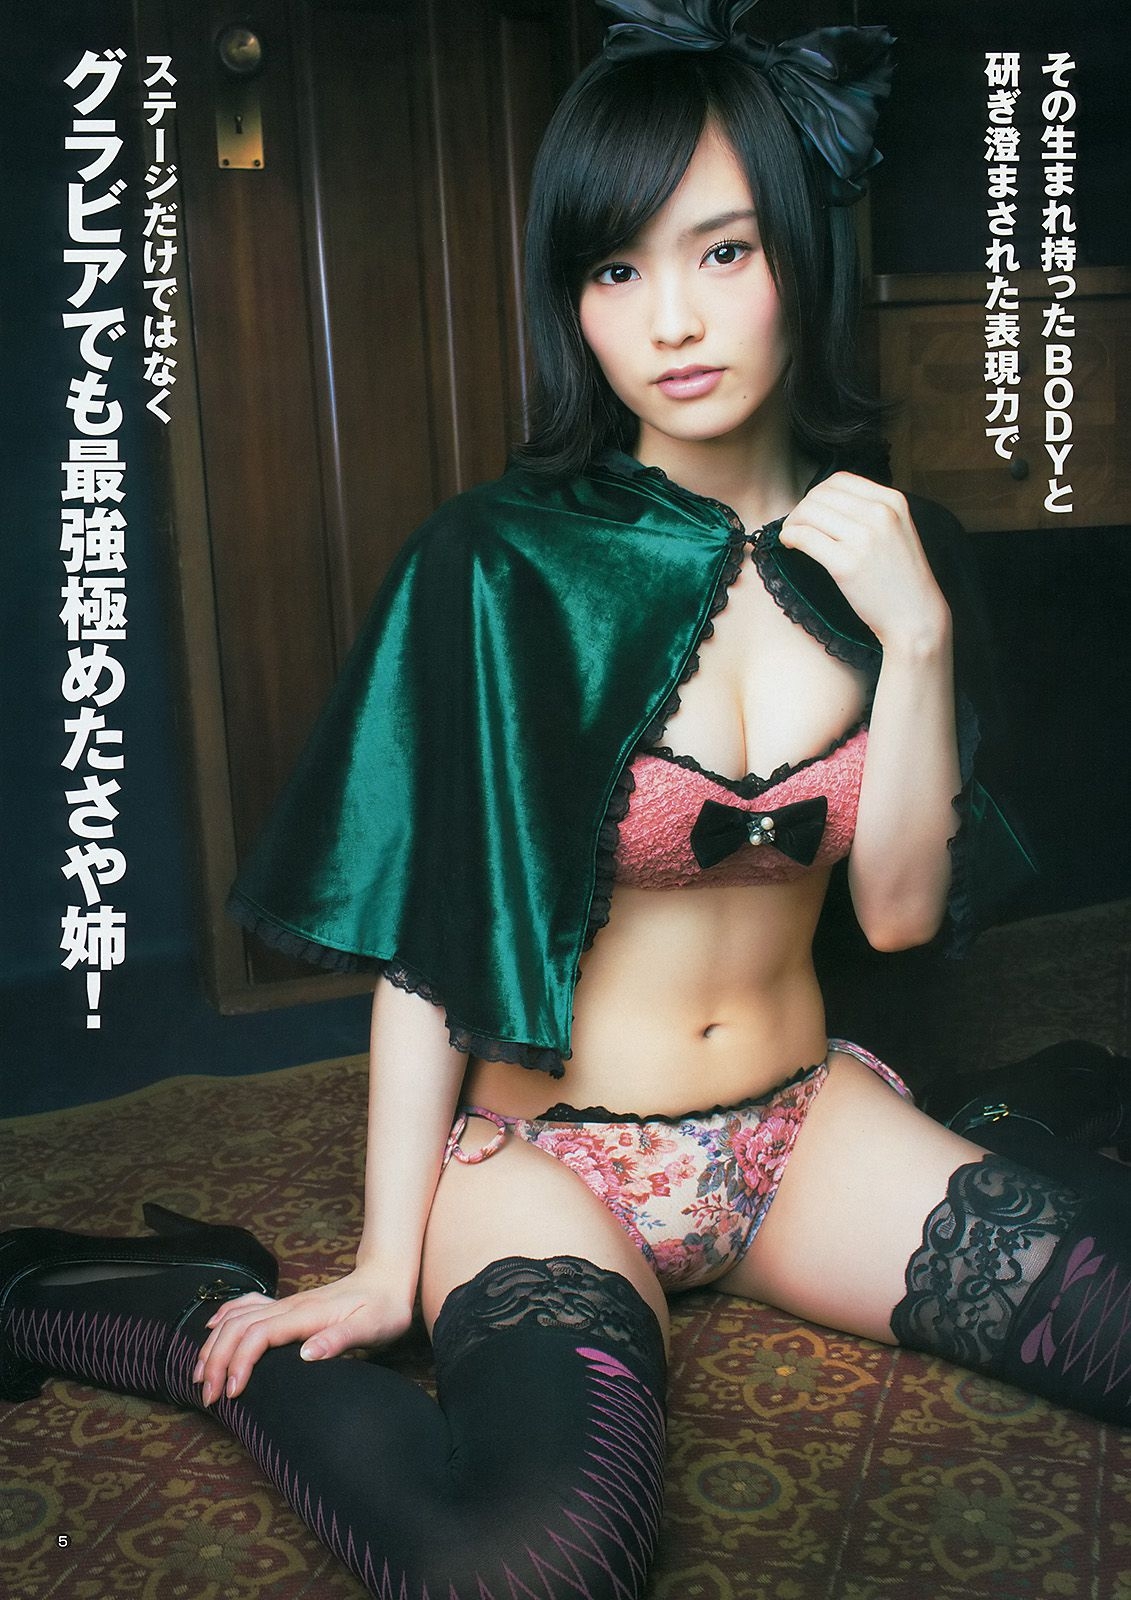 山本彩 48グループ 久慈暁子 [Weekly Young Jump] 2014年No.17 写真杂志 